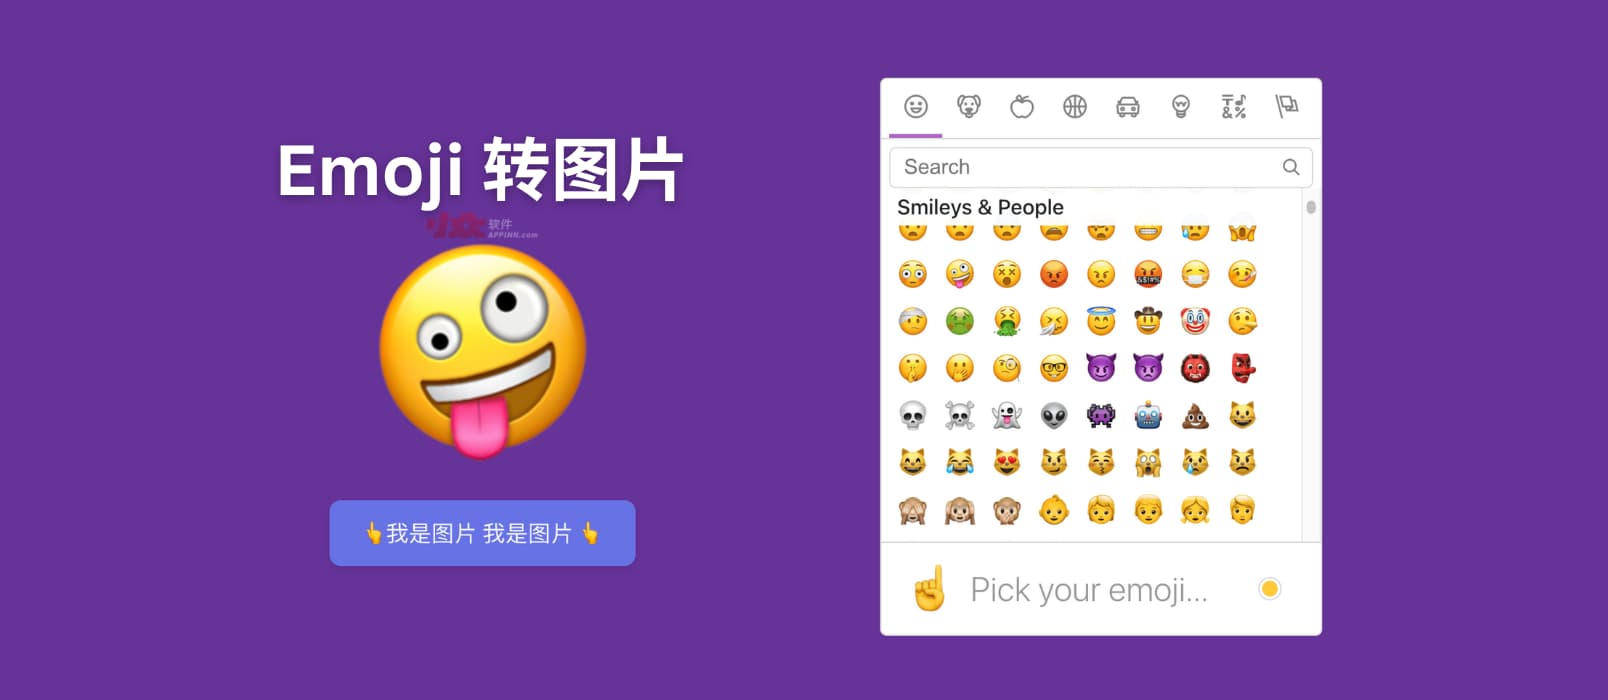 Emoji to image - 一个简单的将 Emoji 表情转换为图片的工具